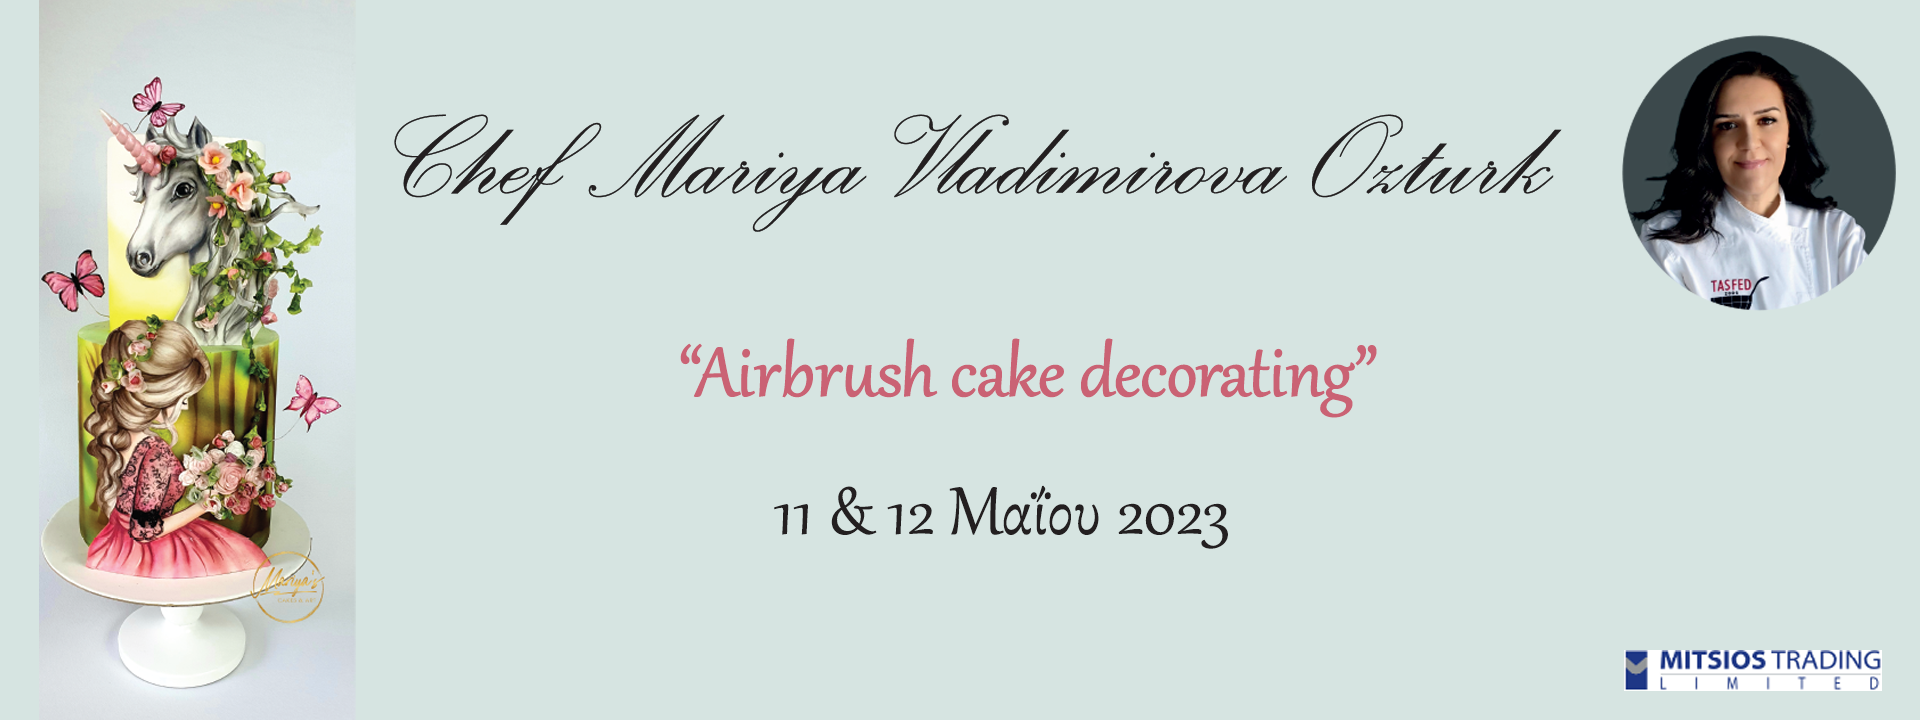 Airbrush Cake Decorating